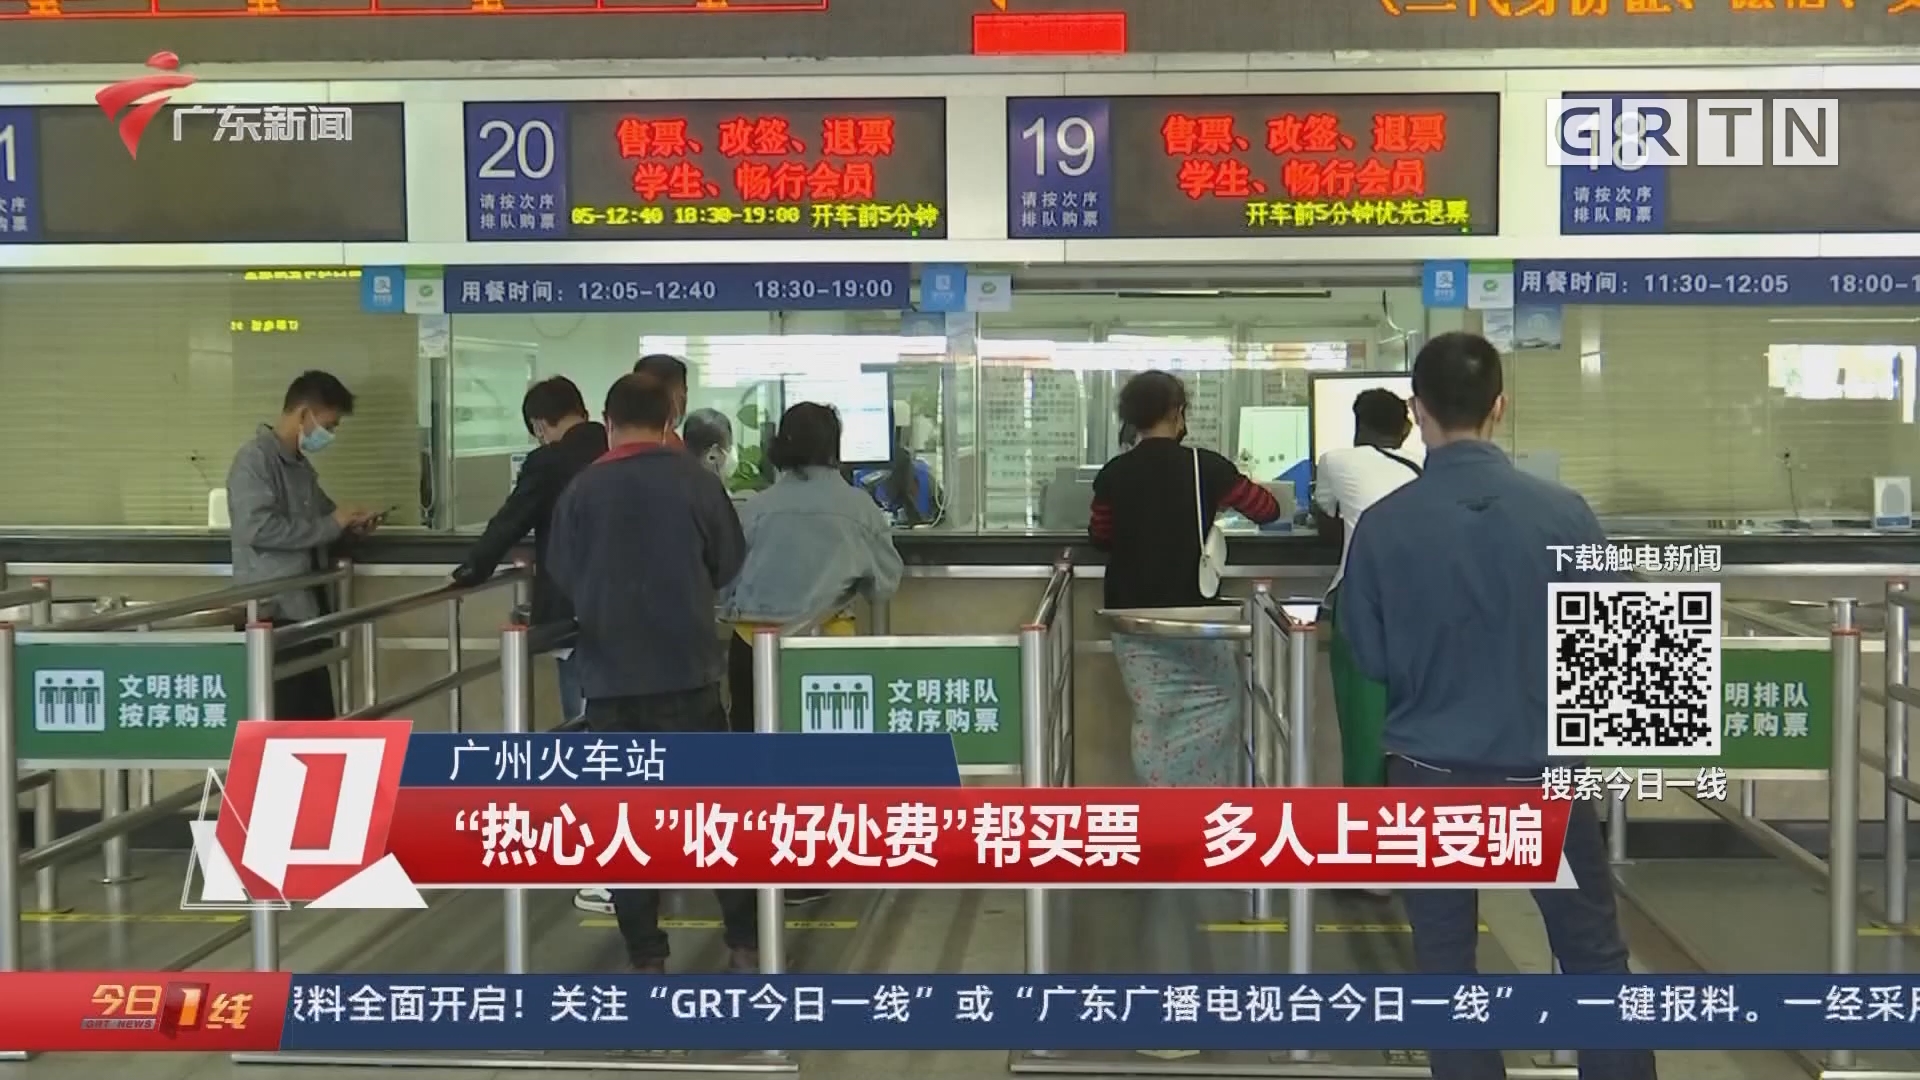 广州火车站:热心人收好处费帮买票 多人上当受骗